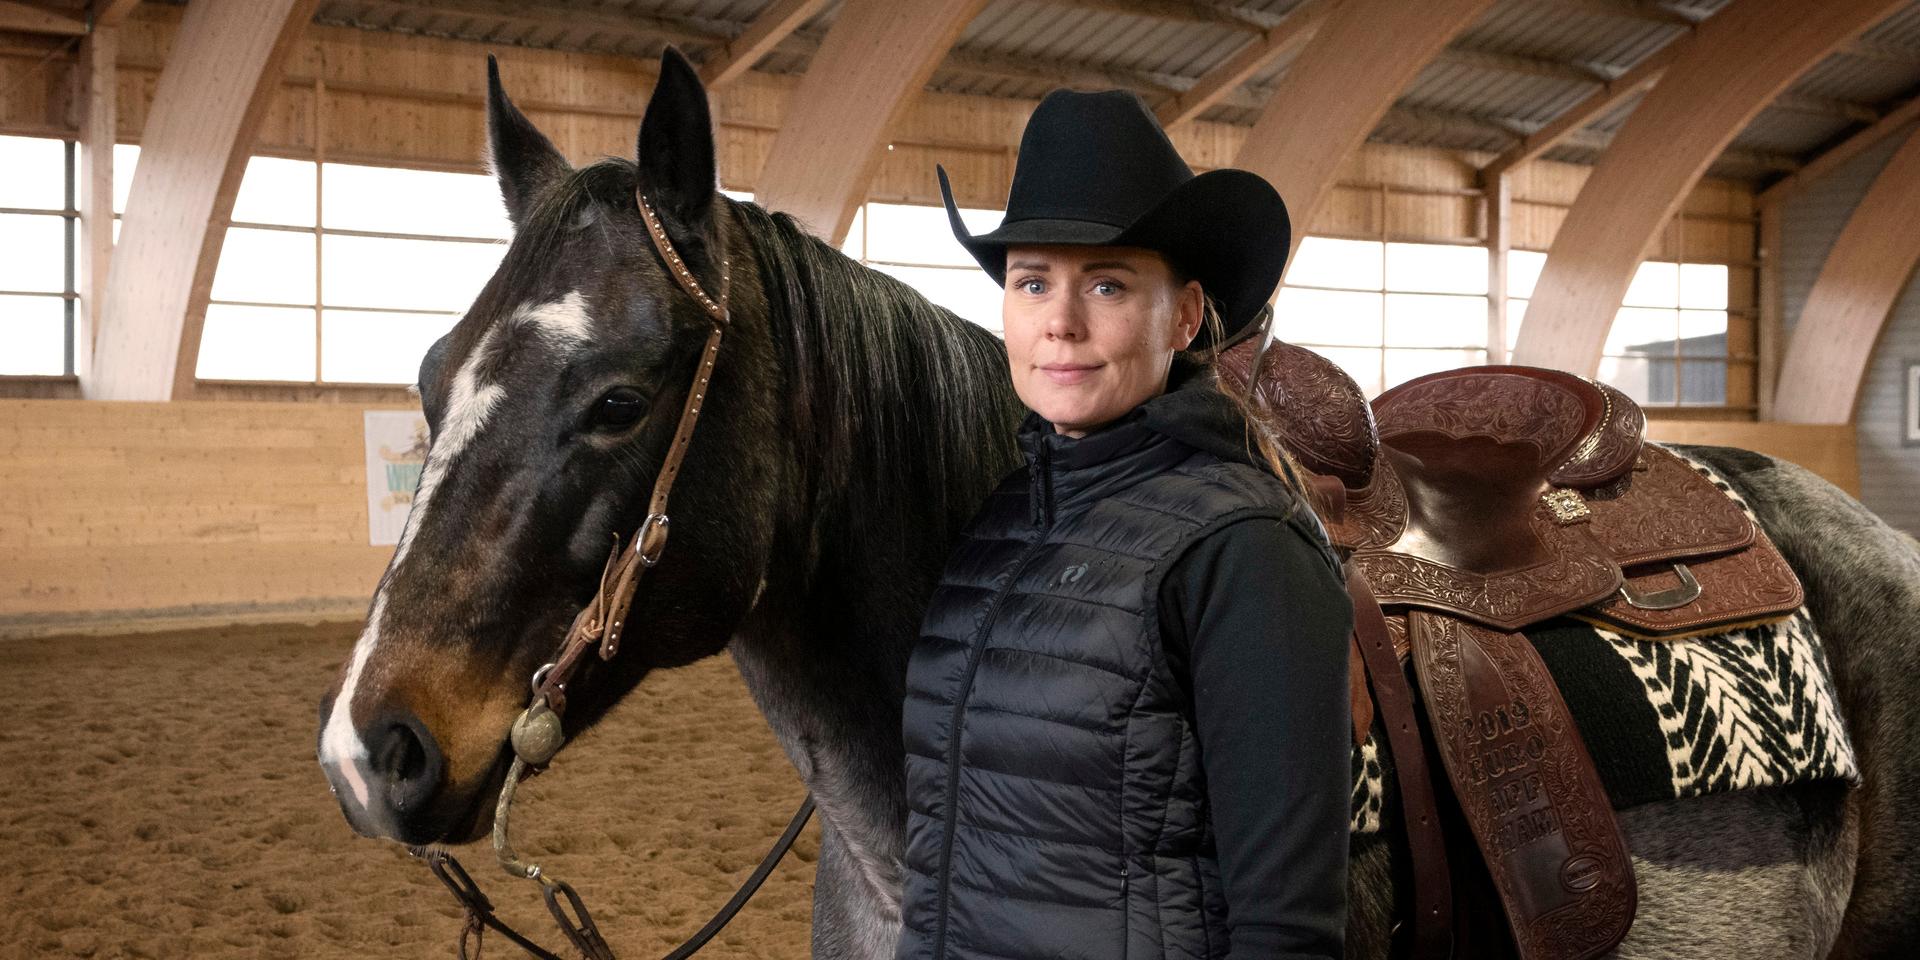 Anna Lejvell upplever att hästarna ger både inspiration och återhämtning. De får henne att stanna upp och tänka efter i vardagen. ”Hästarna har en jättestor plats i mitt liv och så kommer det alltid att vara”, säger hon.